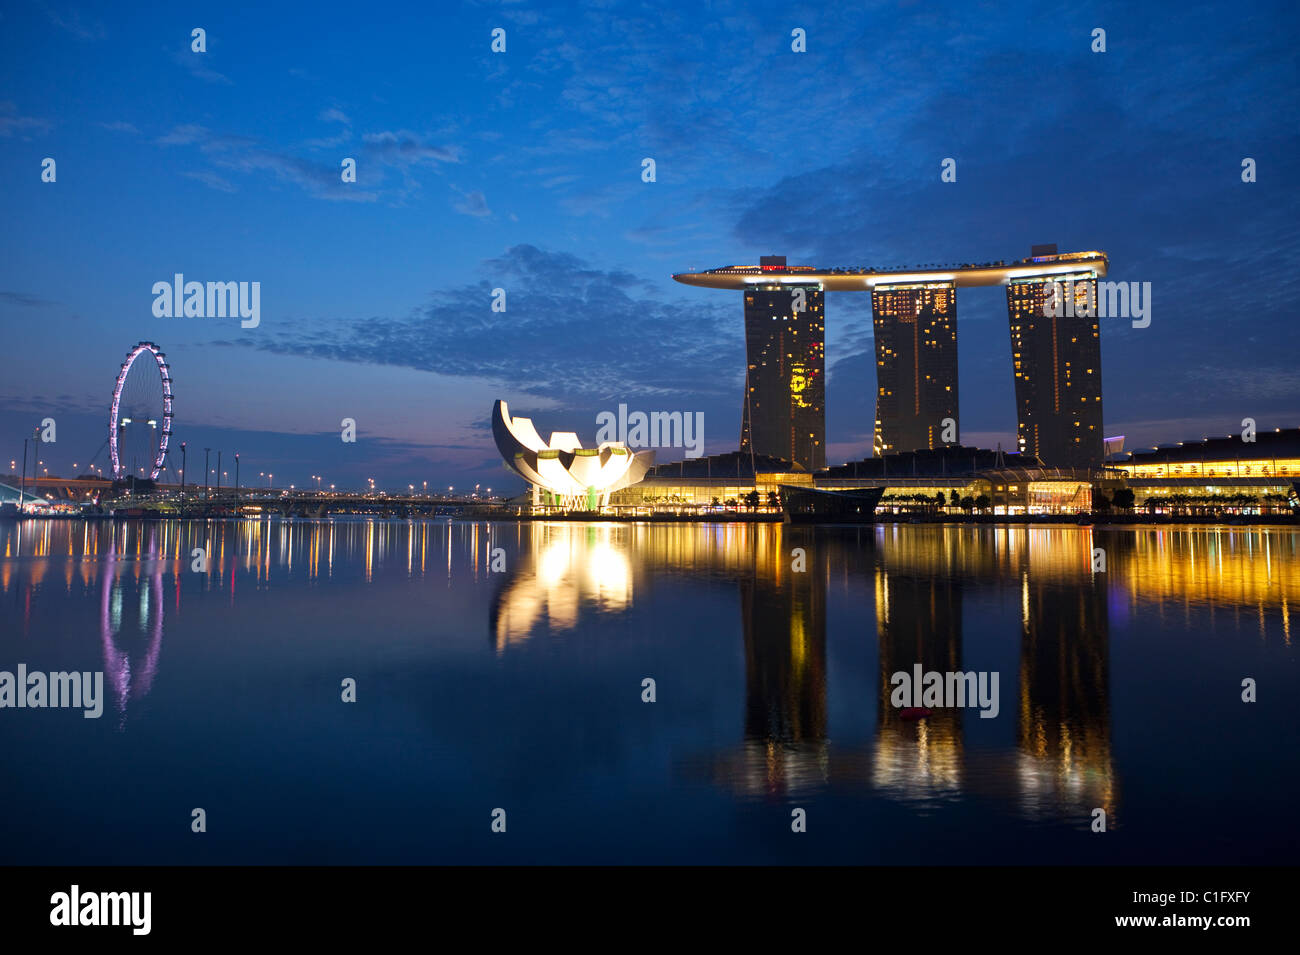 El Marina Bay Sands de Singapur. Marina Bay, Singapur Foto de stock